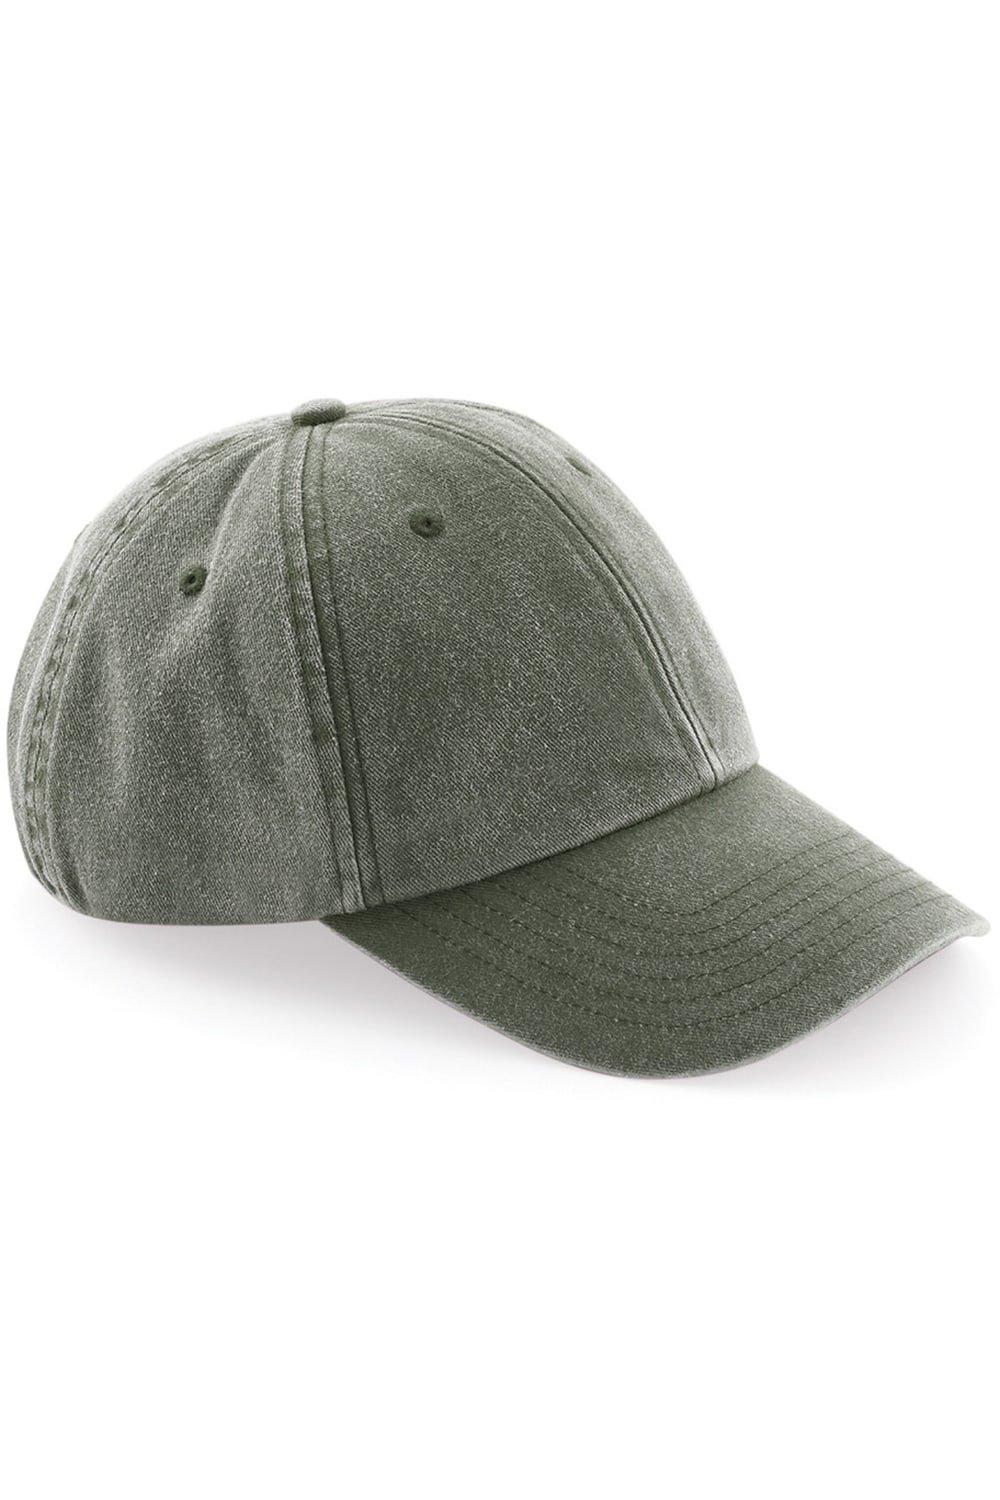 Низкопрофильная винтажная кепка в джинсовом стиле Beechfield, зеленый